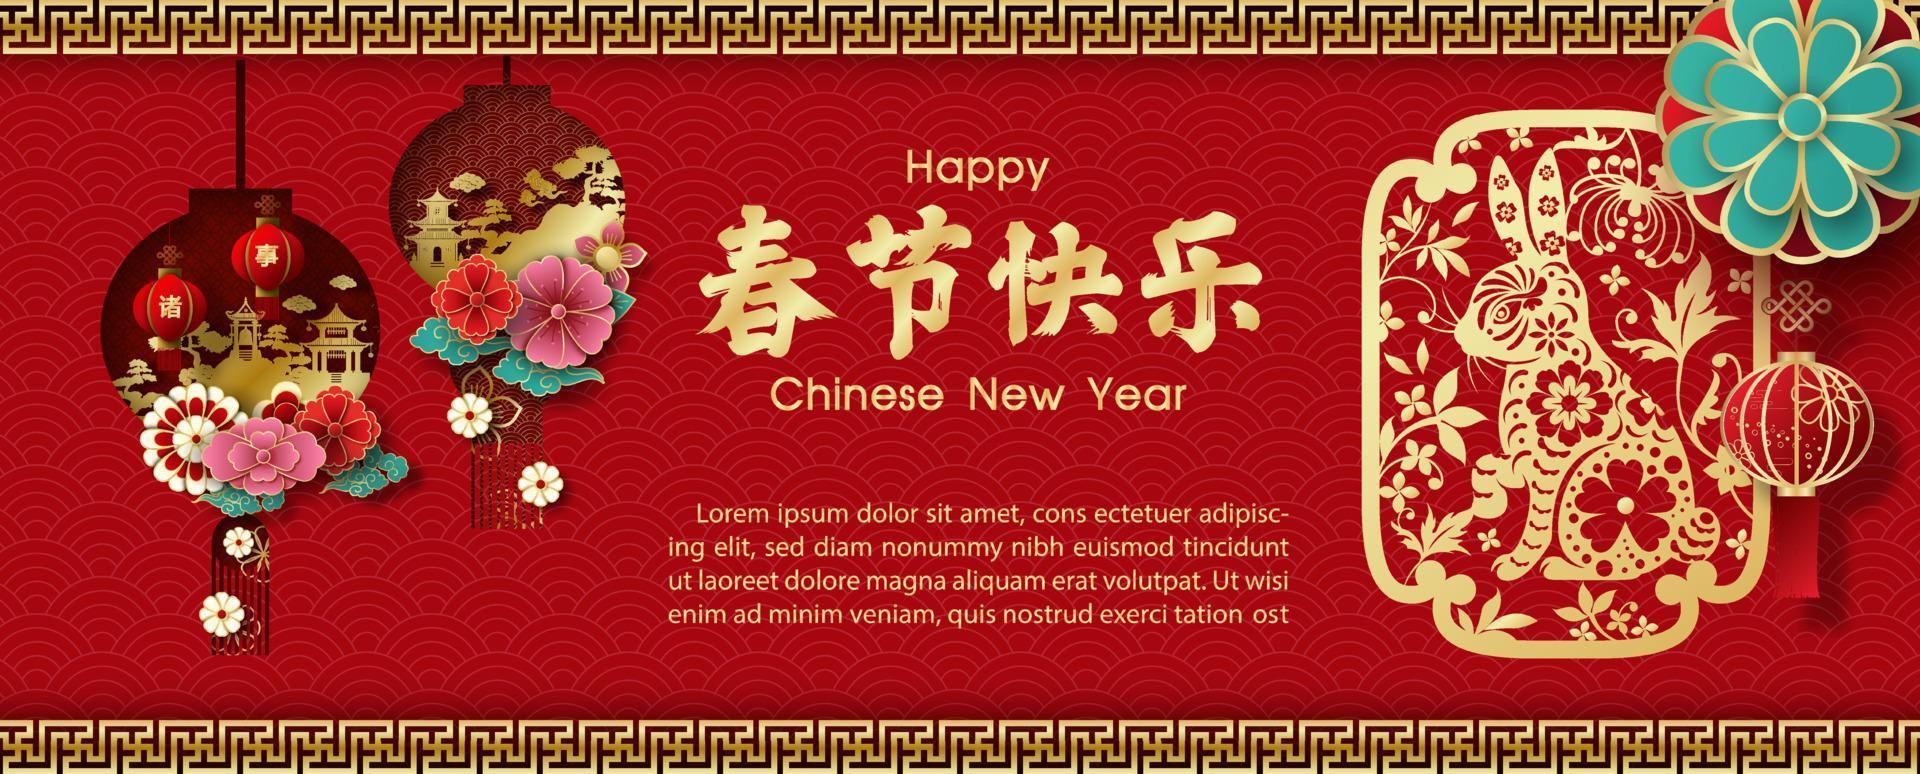 tarjeta de felicitación de año nuevo chino el año del conejo en corte de papel y estilo 3d con diseño vectorial. las letras chinas significan feliz año nuevo chino y les deseo buena suerte en todos los asuntos en inglés vector